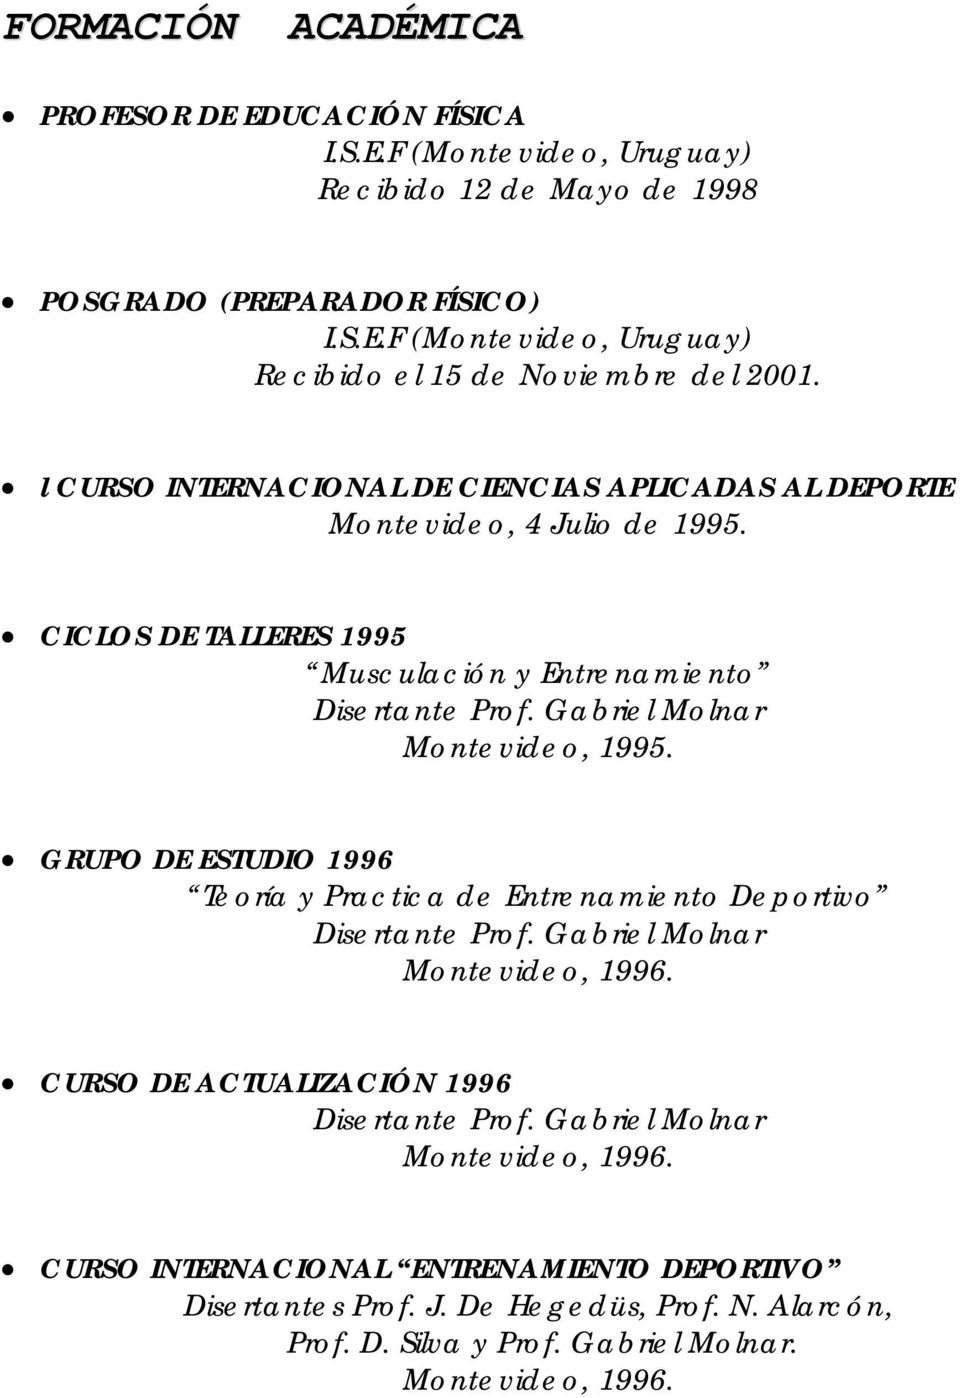 Gabriel Molnar Montevideo, 1995. GRUPO DE ESTUDIO 1996 Teoría y Practica de Entrenamiento Deportivo Disertante Prof. Gabriel Molnar Montevideo, 1996.